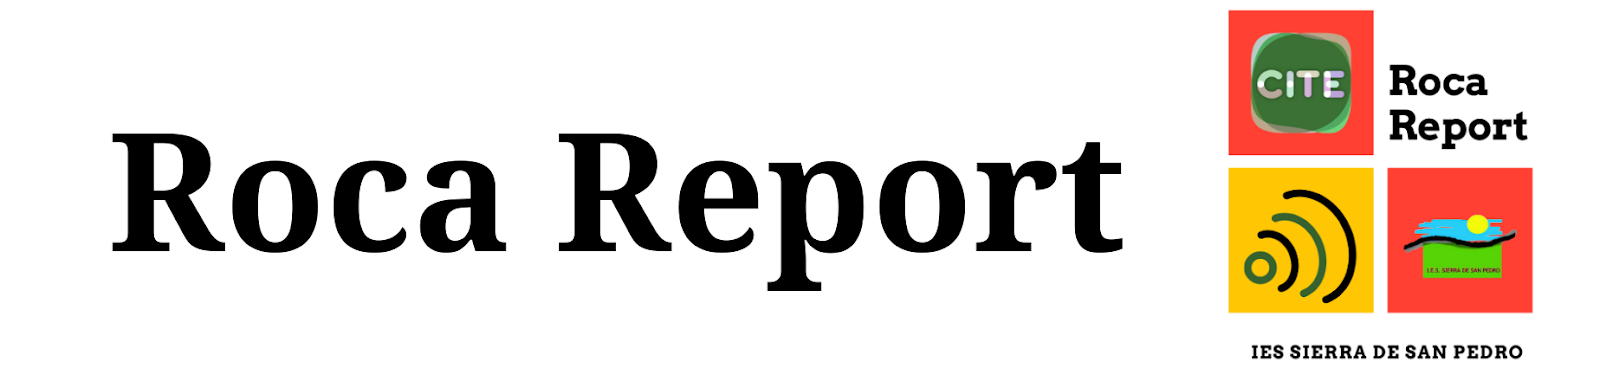 Roca Report